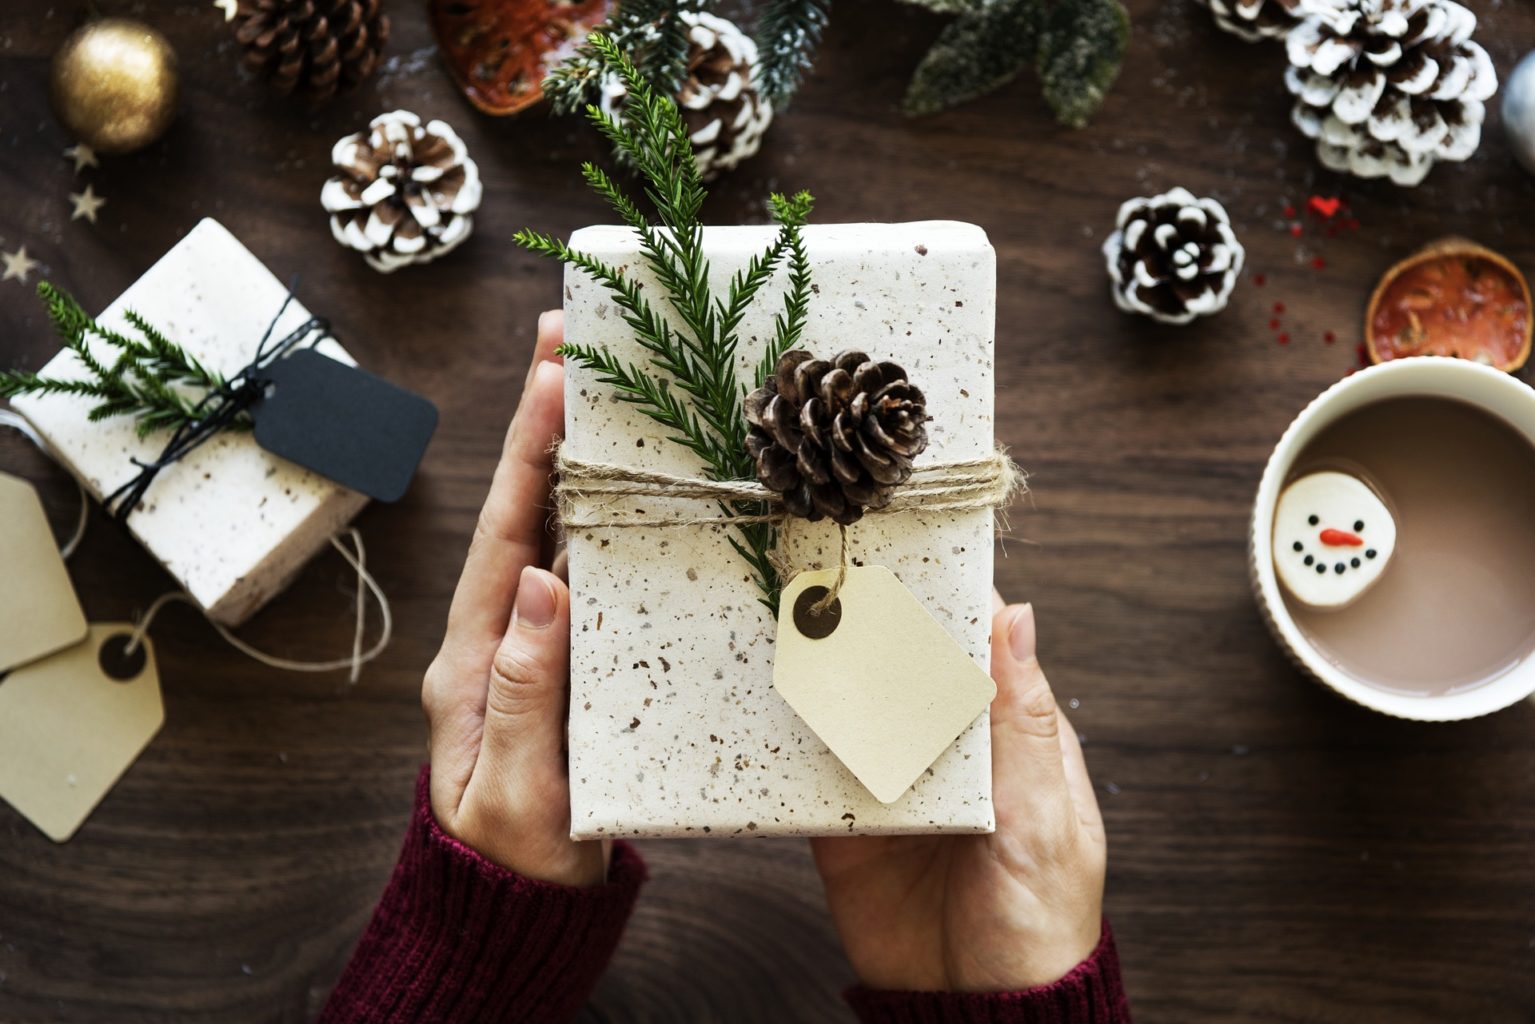 Pour Noël, un Français sur quatre offrirait un objet connecté